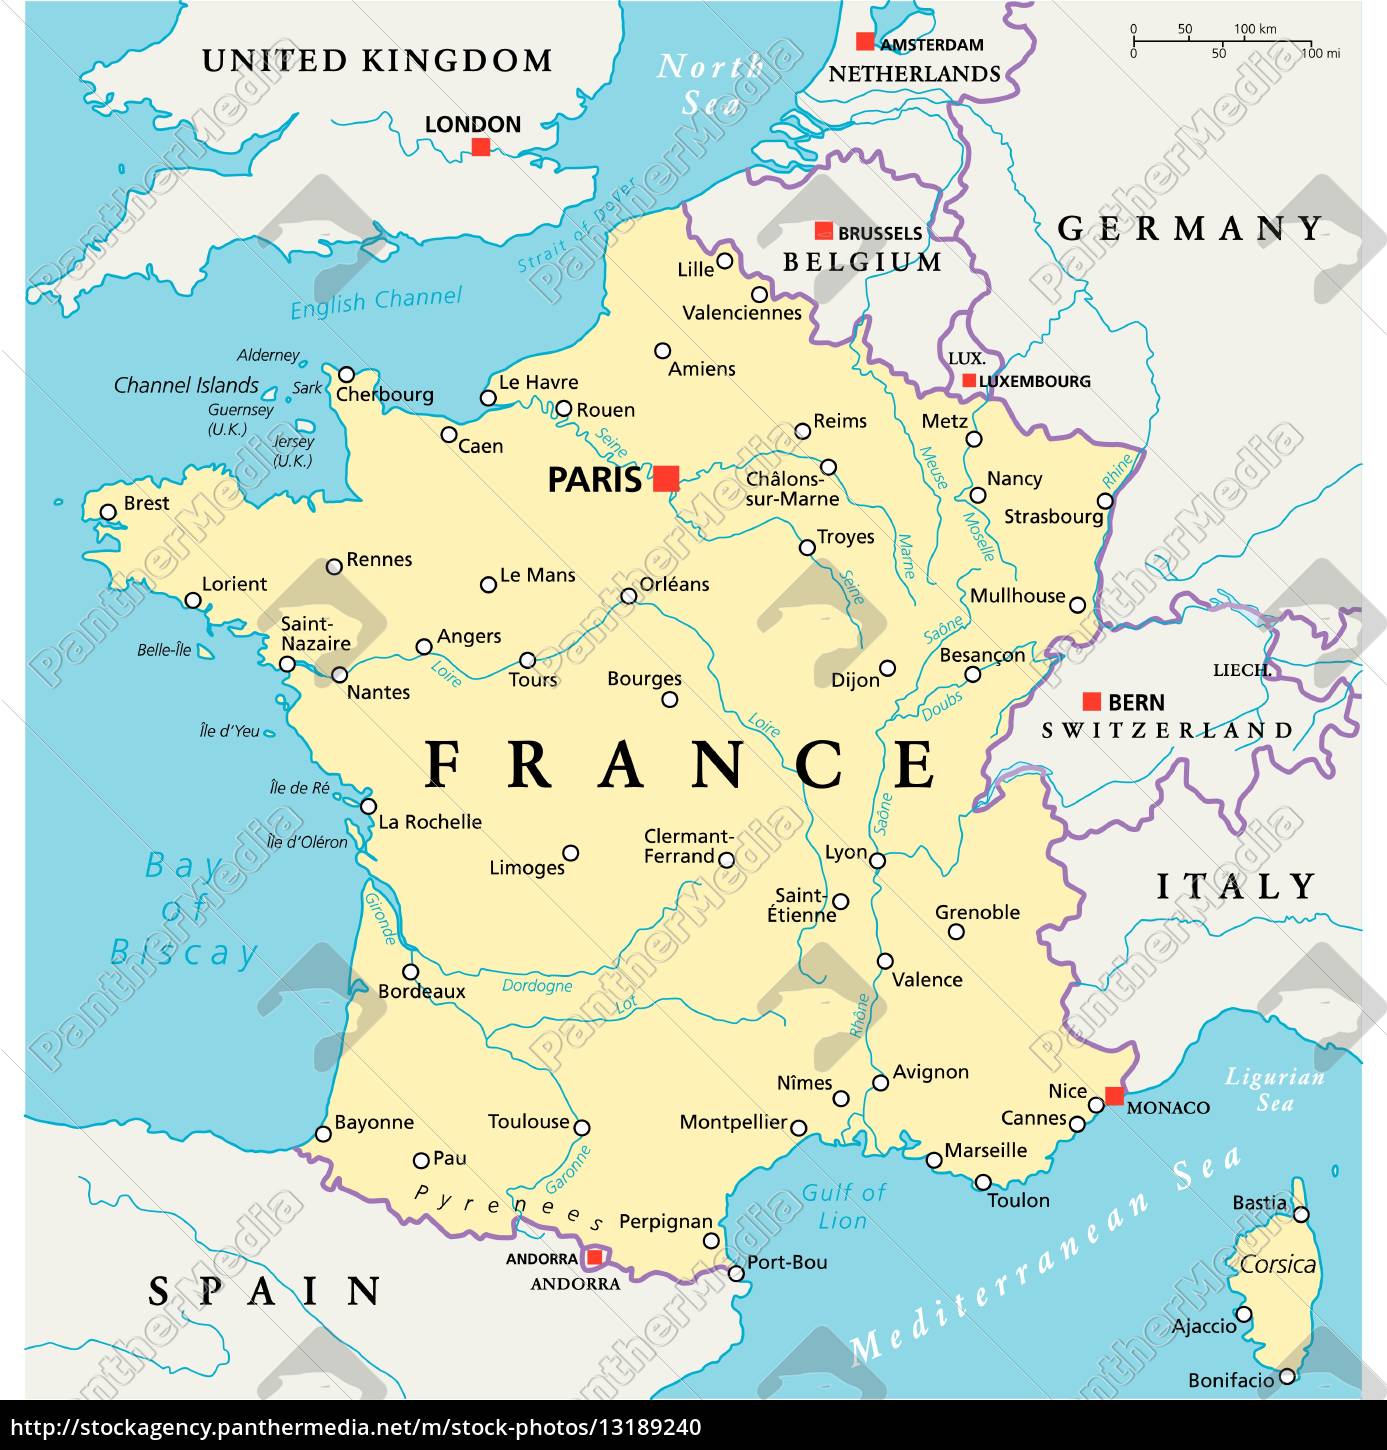 frankreich politische karte - Lizenzfreies Foto - #13189240